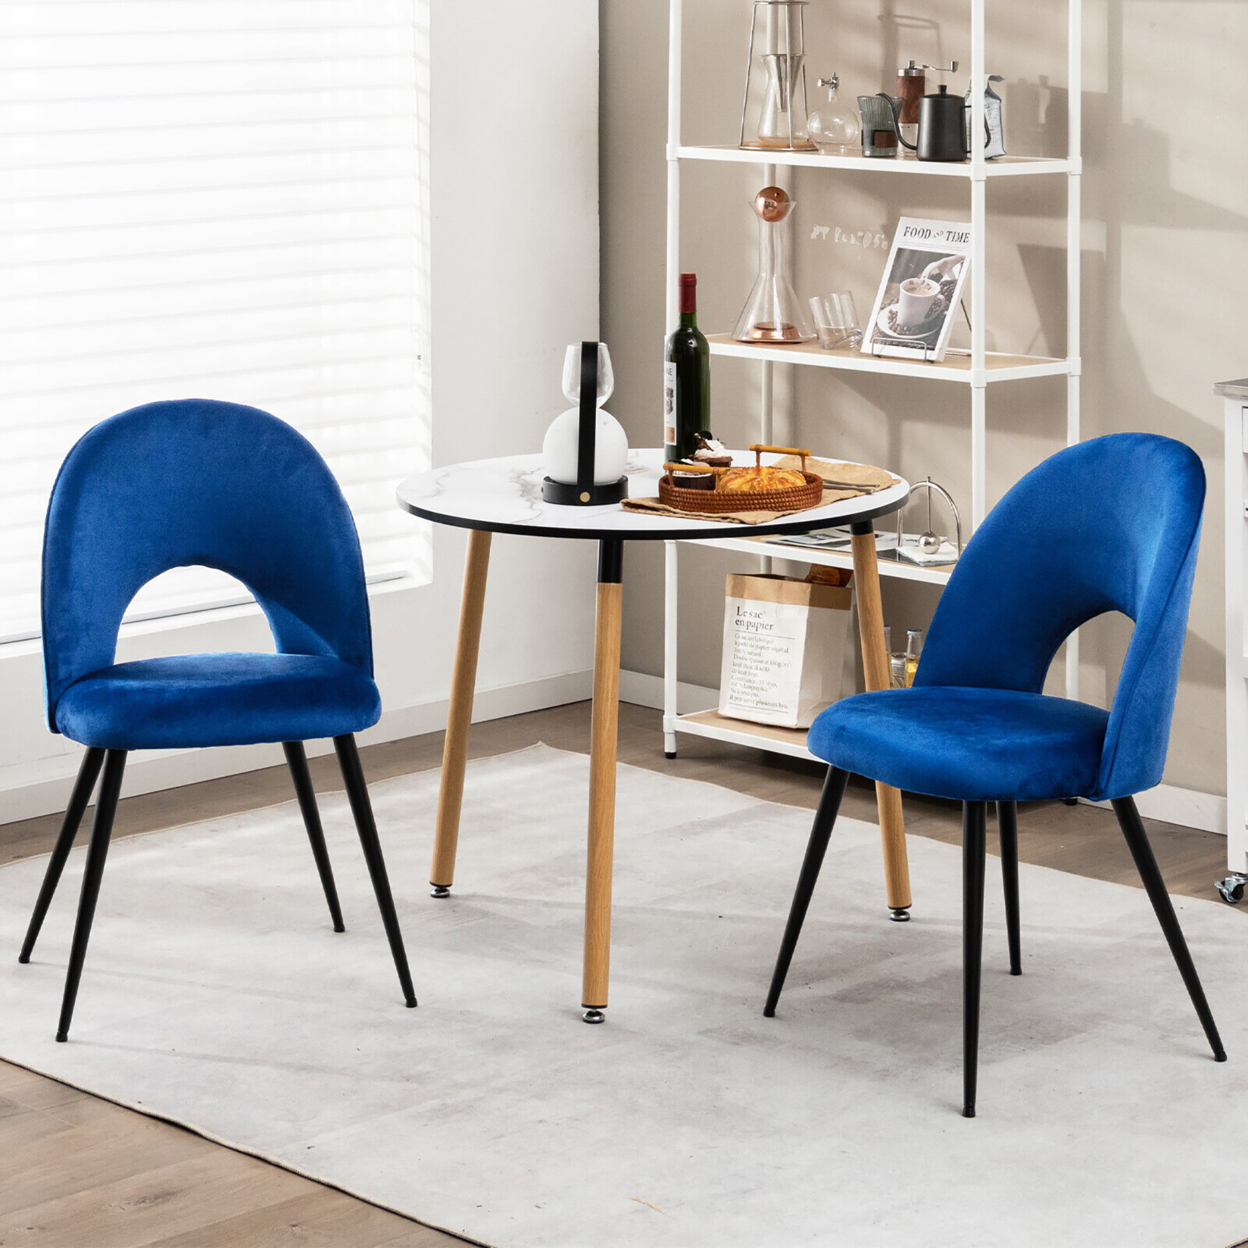 Dining Chair Set Of 2 Velvet Upholstered Side Chair W/ Metal Base For Living Room - Blue